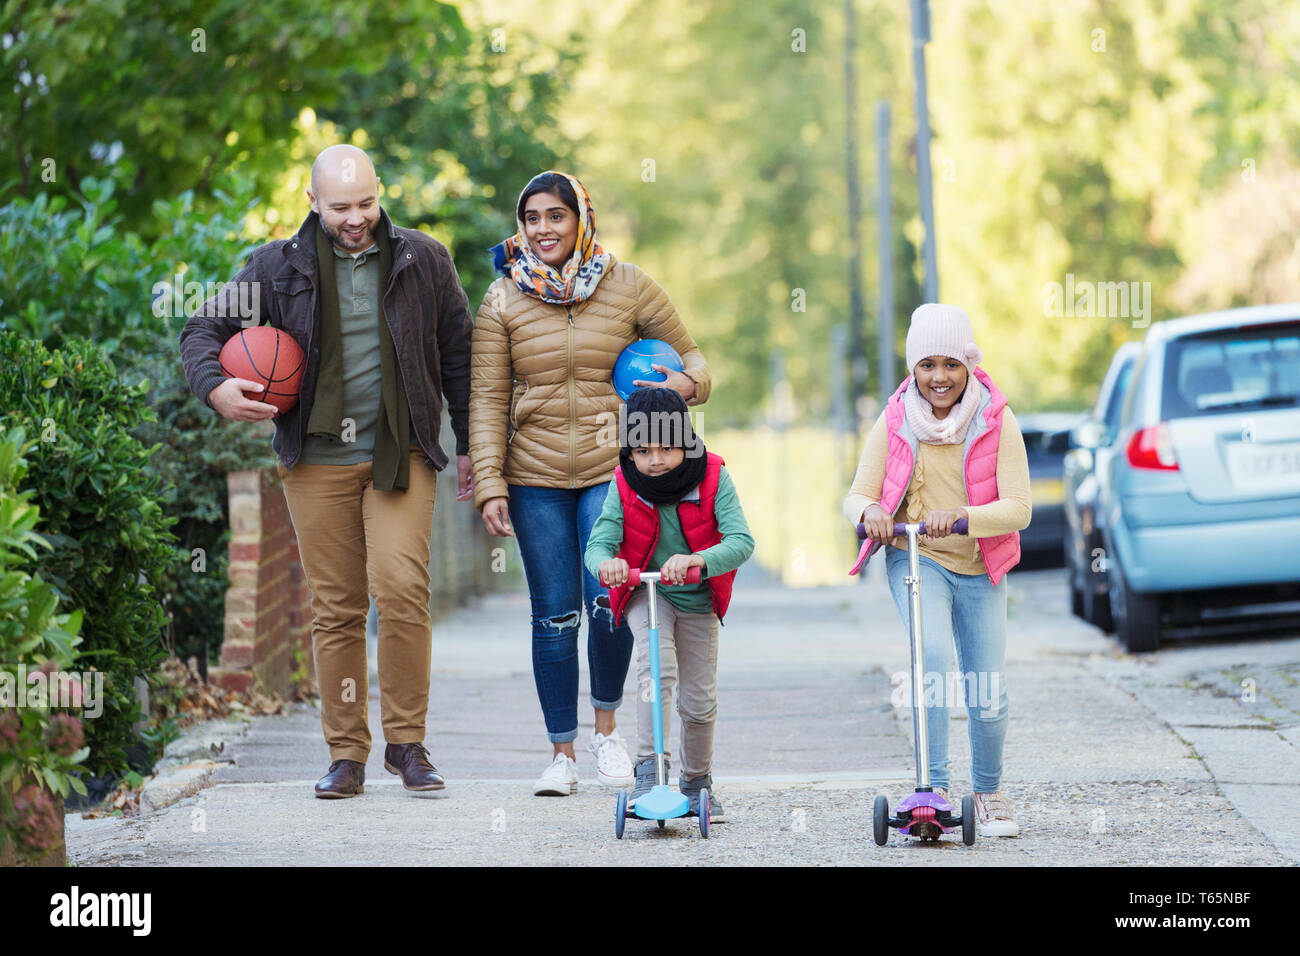 Regarder la famille musulmane et riding scooter on sidewalk Banque D'Images